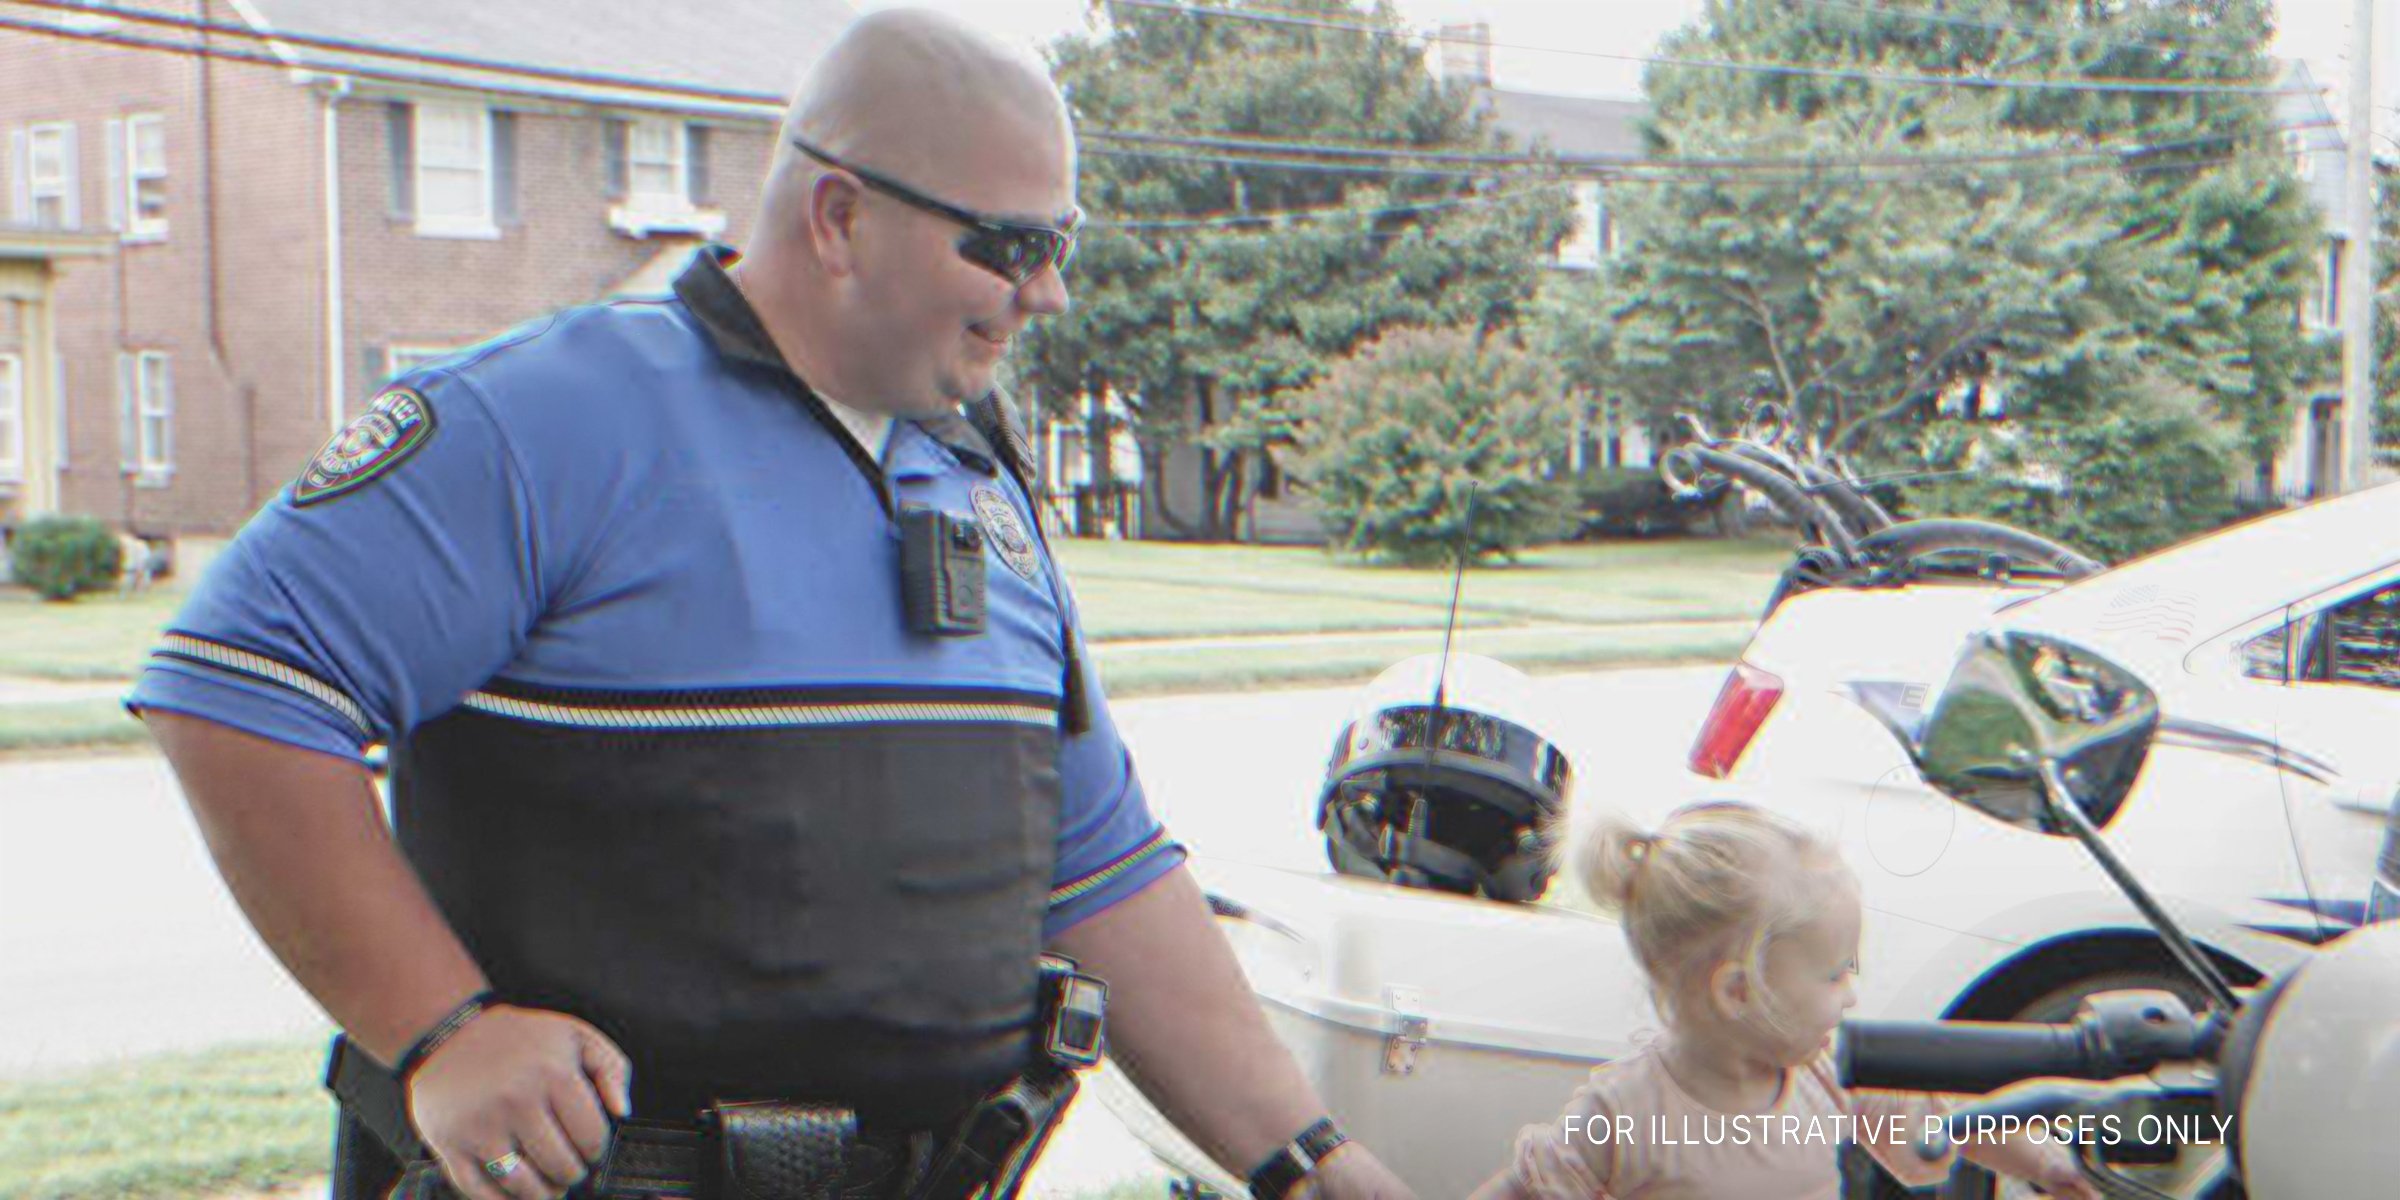 Polizist mit Kind | Quelle: Shutterstock